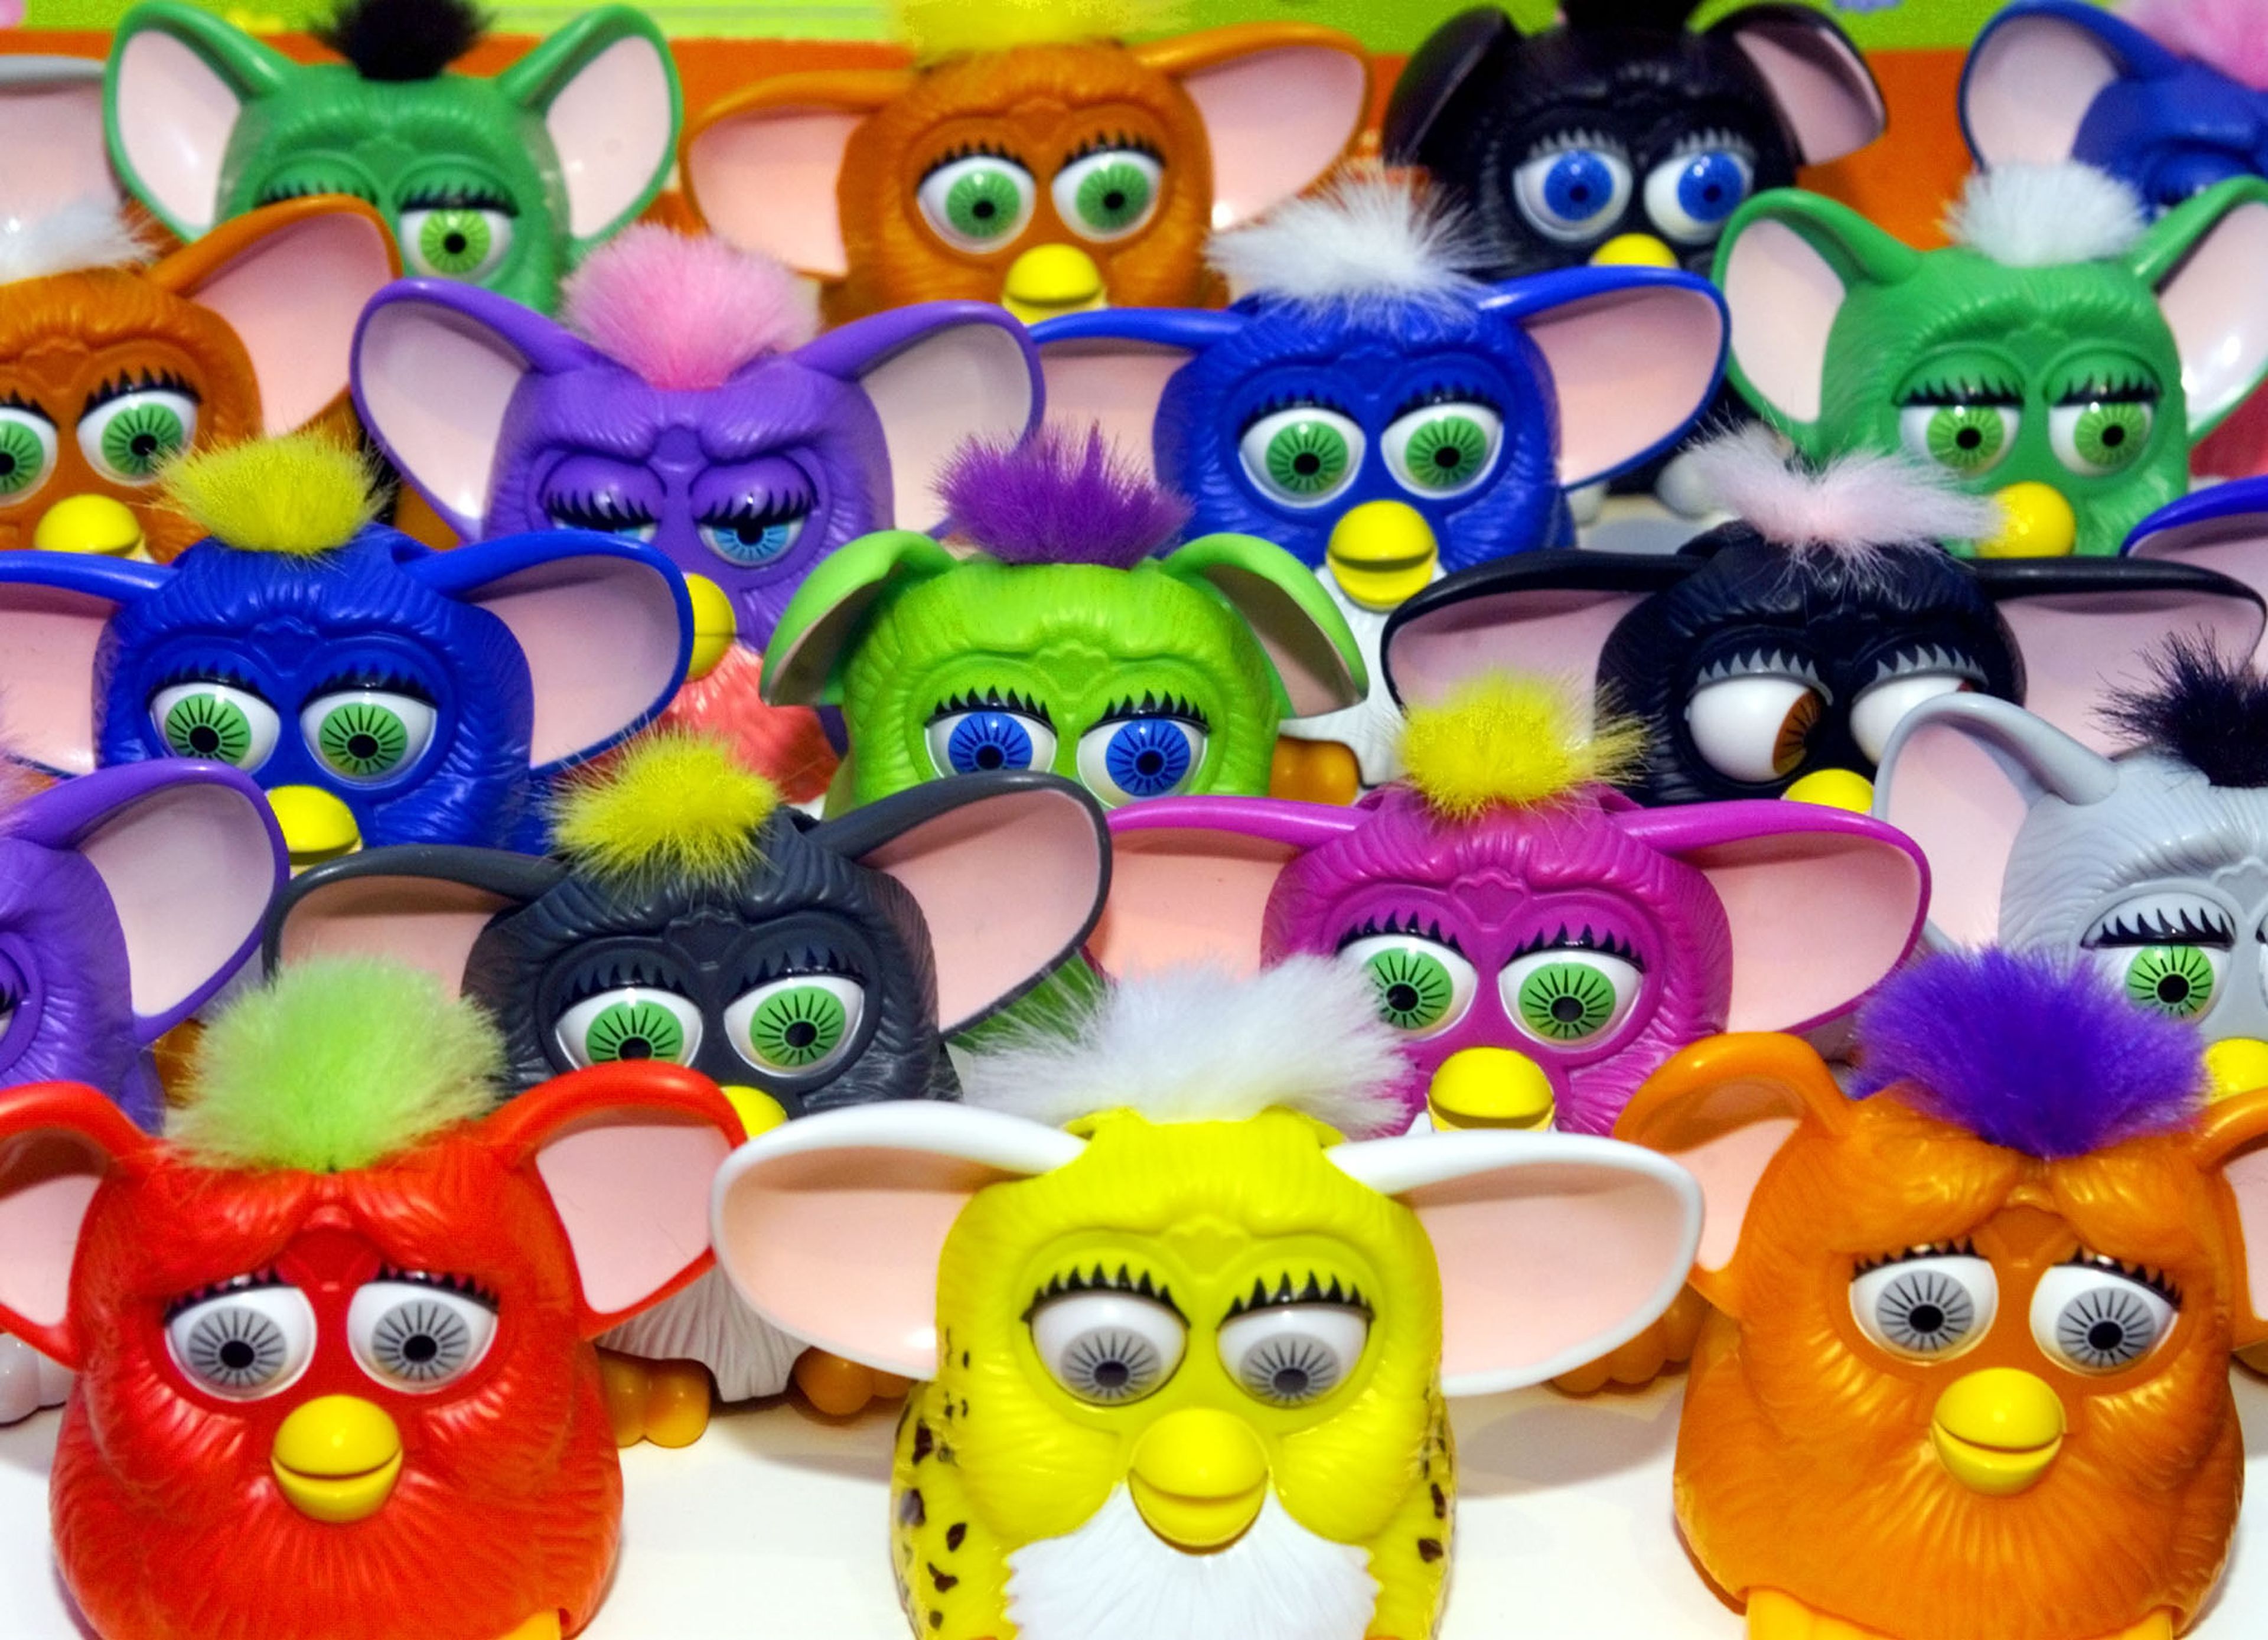 A finales de los años 90 Happy Meal regalaba minuaturas de los por aquel entonces populares Furbys.